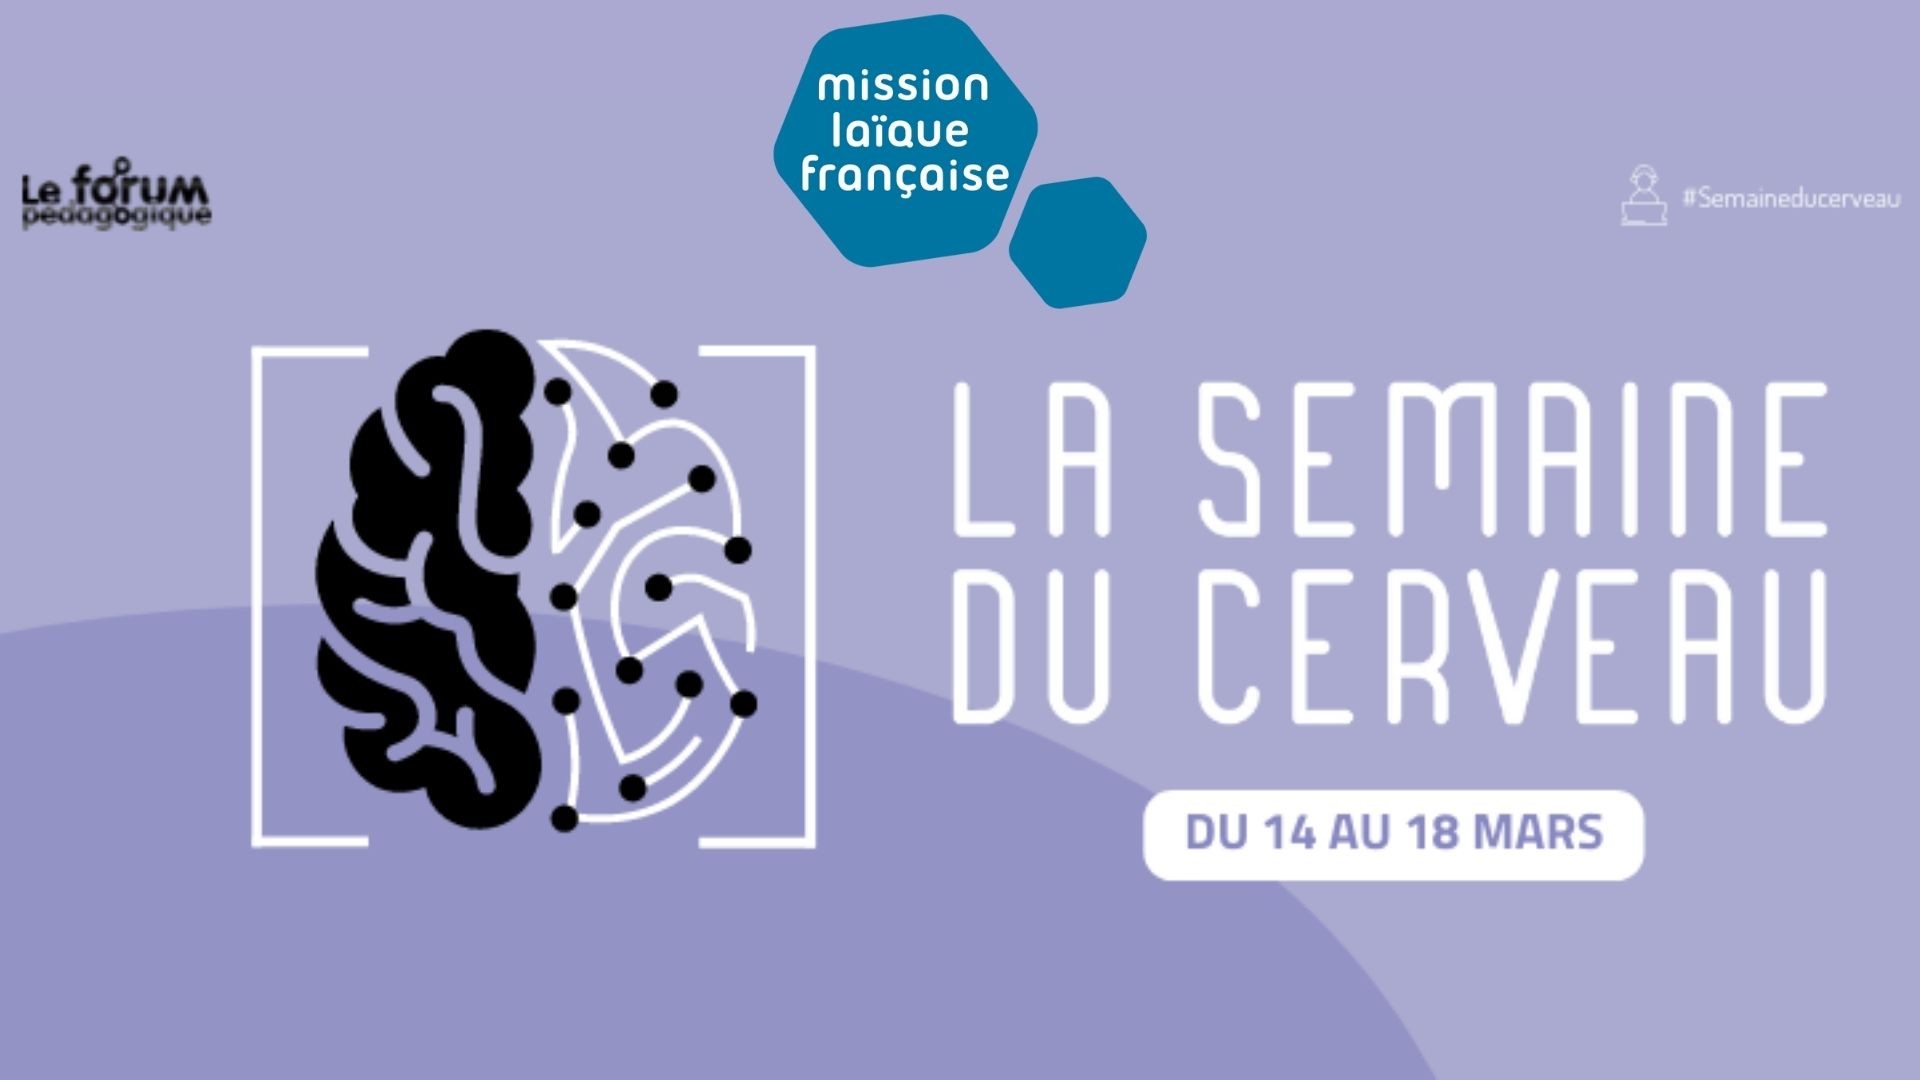 “La semaine du cerveau“ sur le Forum pédagogique de la Mission laïque française